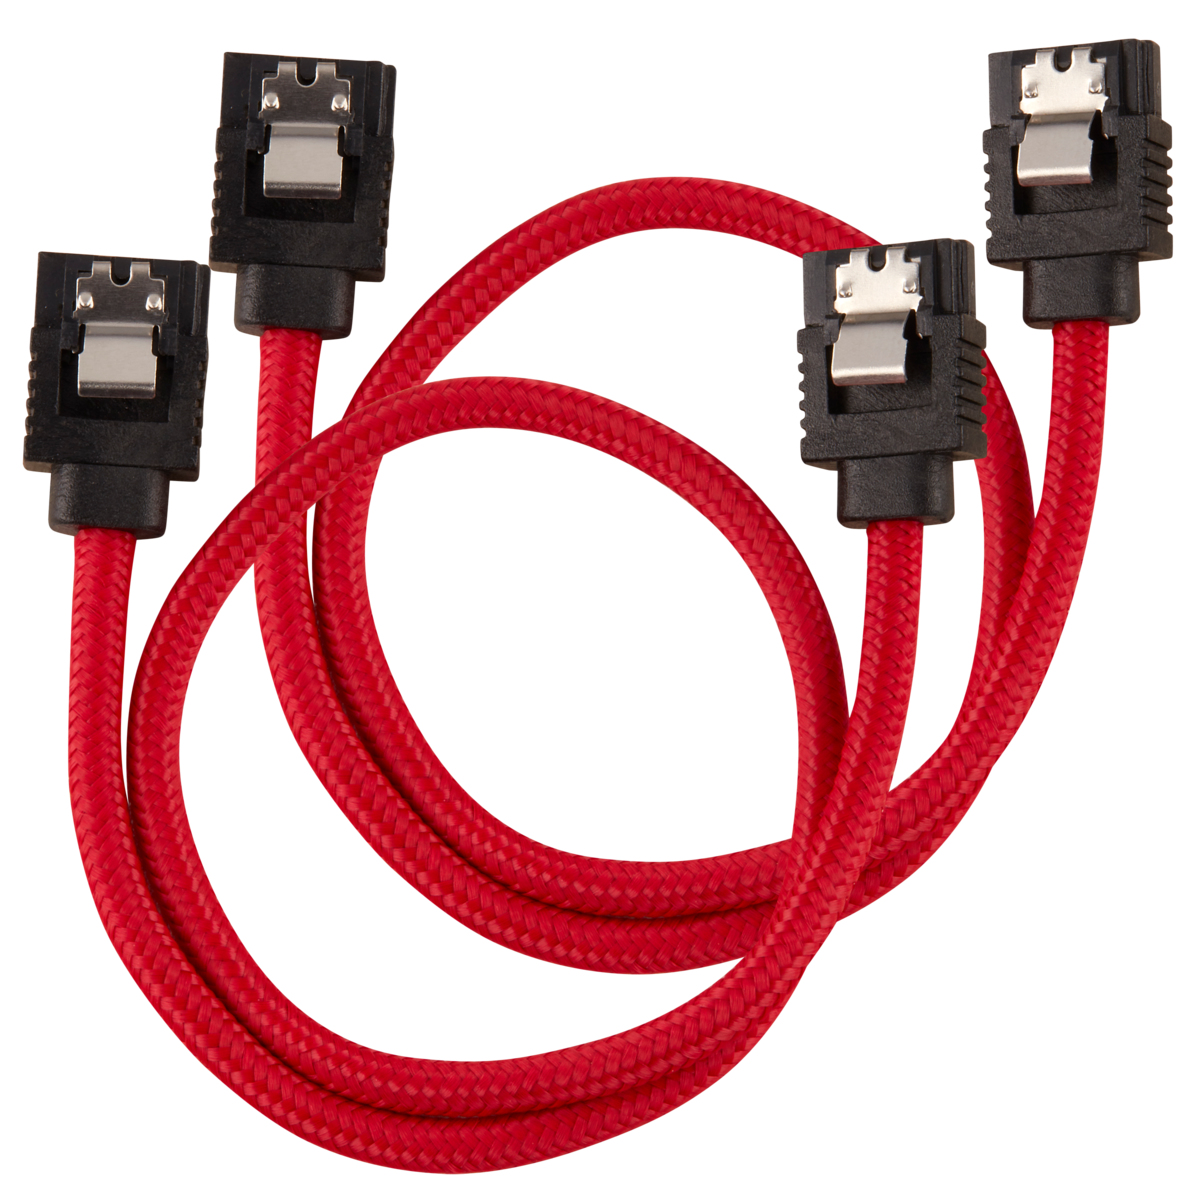 CC-8900250 CORSAIR CC-8900250 - 0.3 m - SATA III - SATA 7-pin - SATA 7-pin - Male/Male - Black - Red